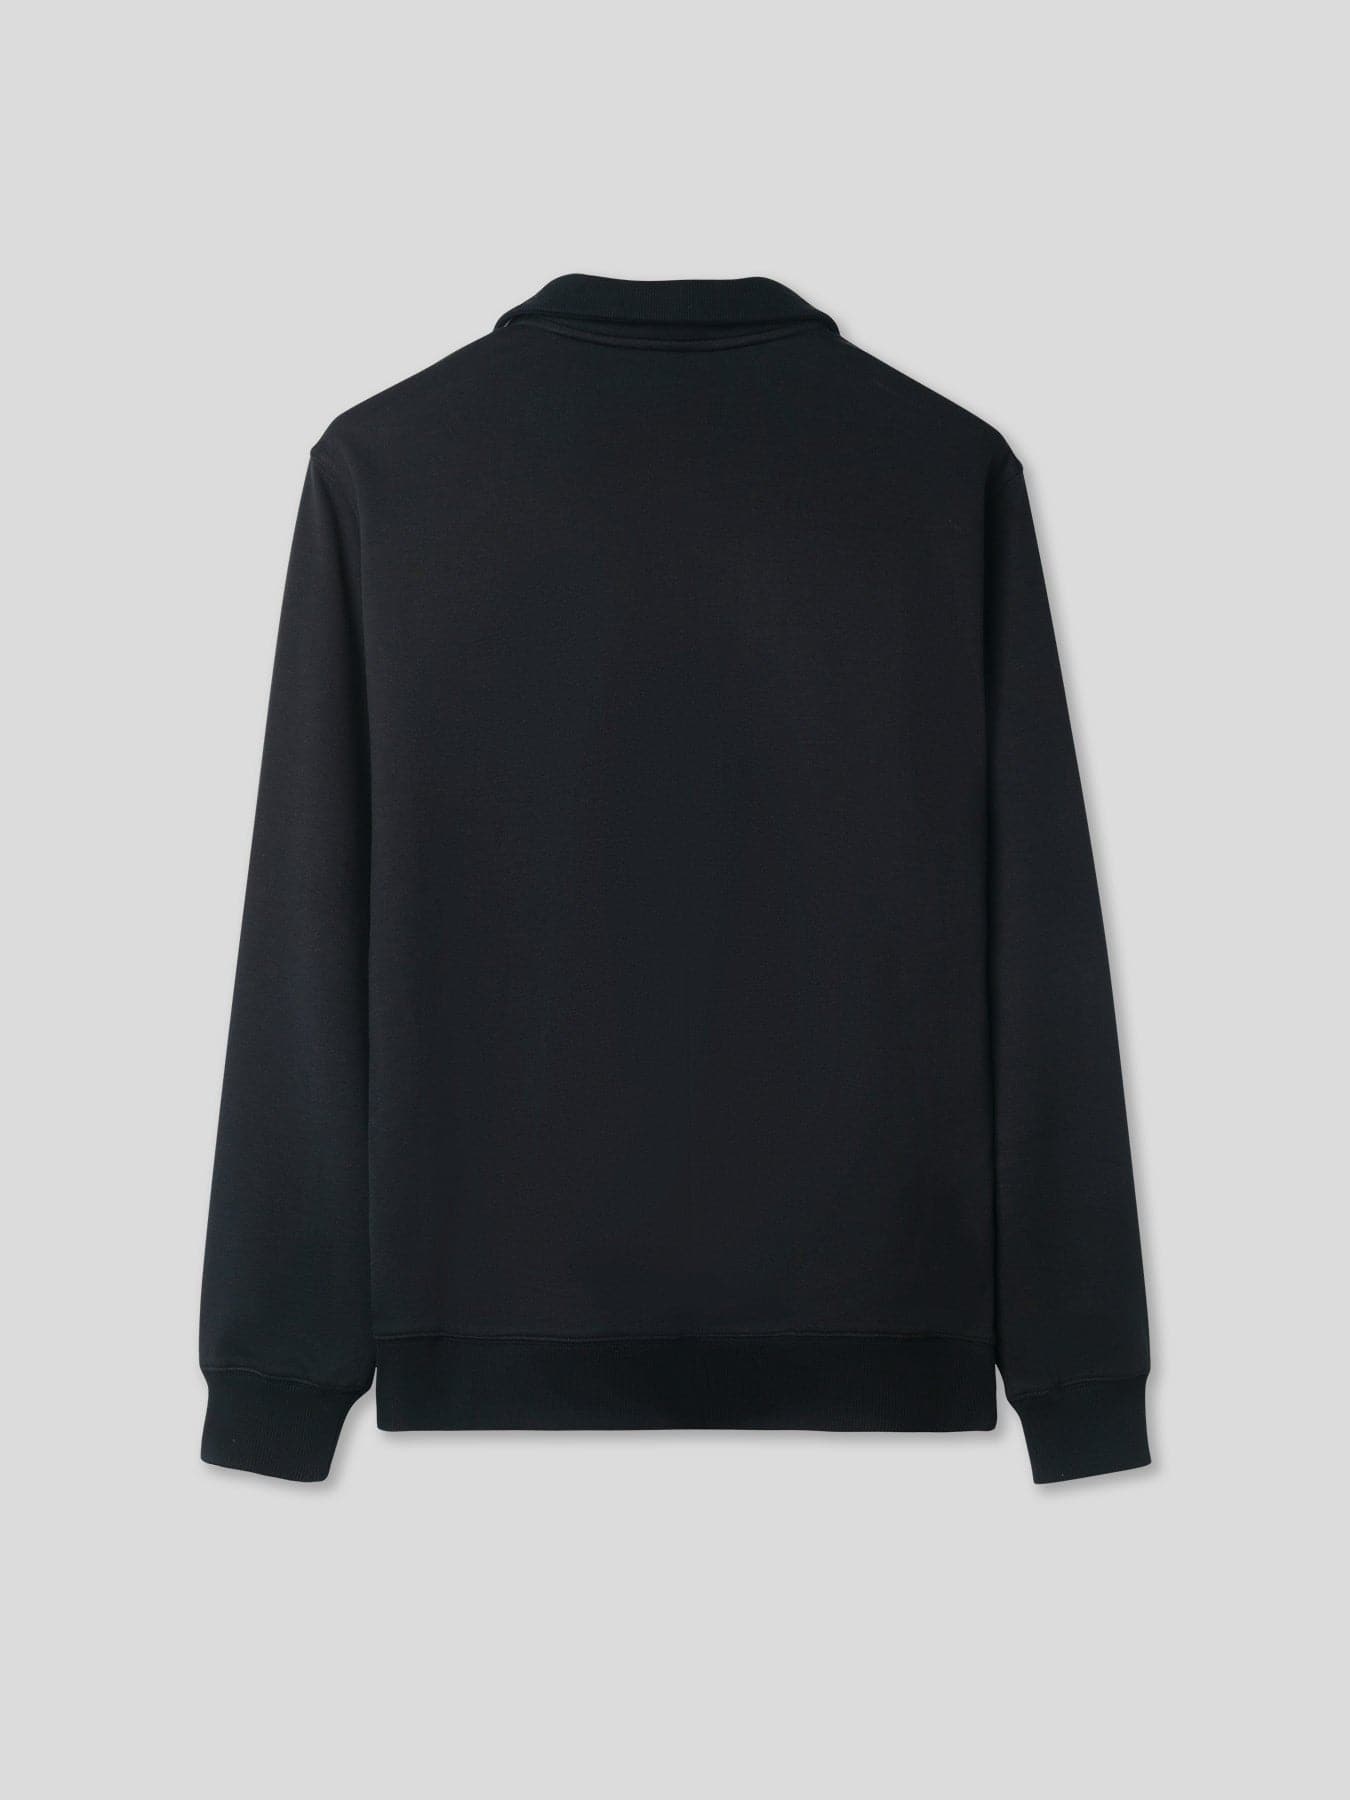 Half Zip Pullover Sweatshirt